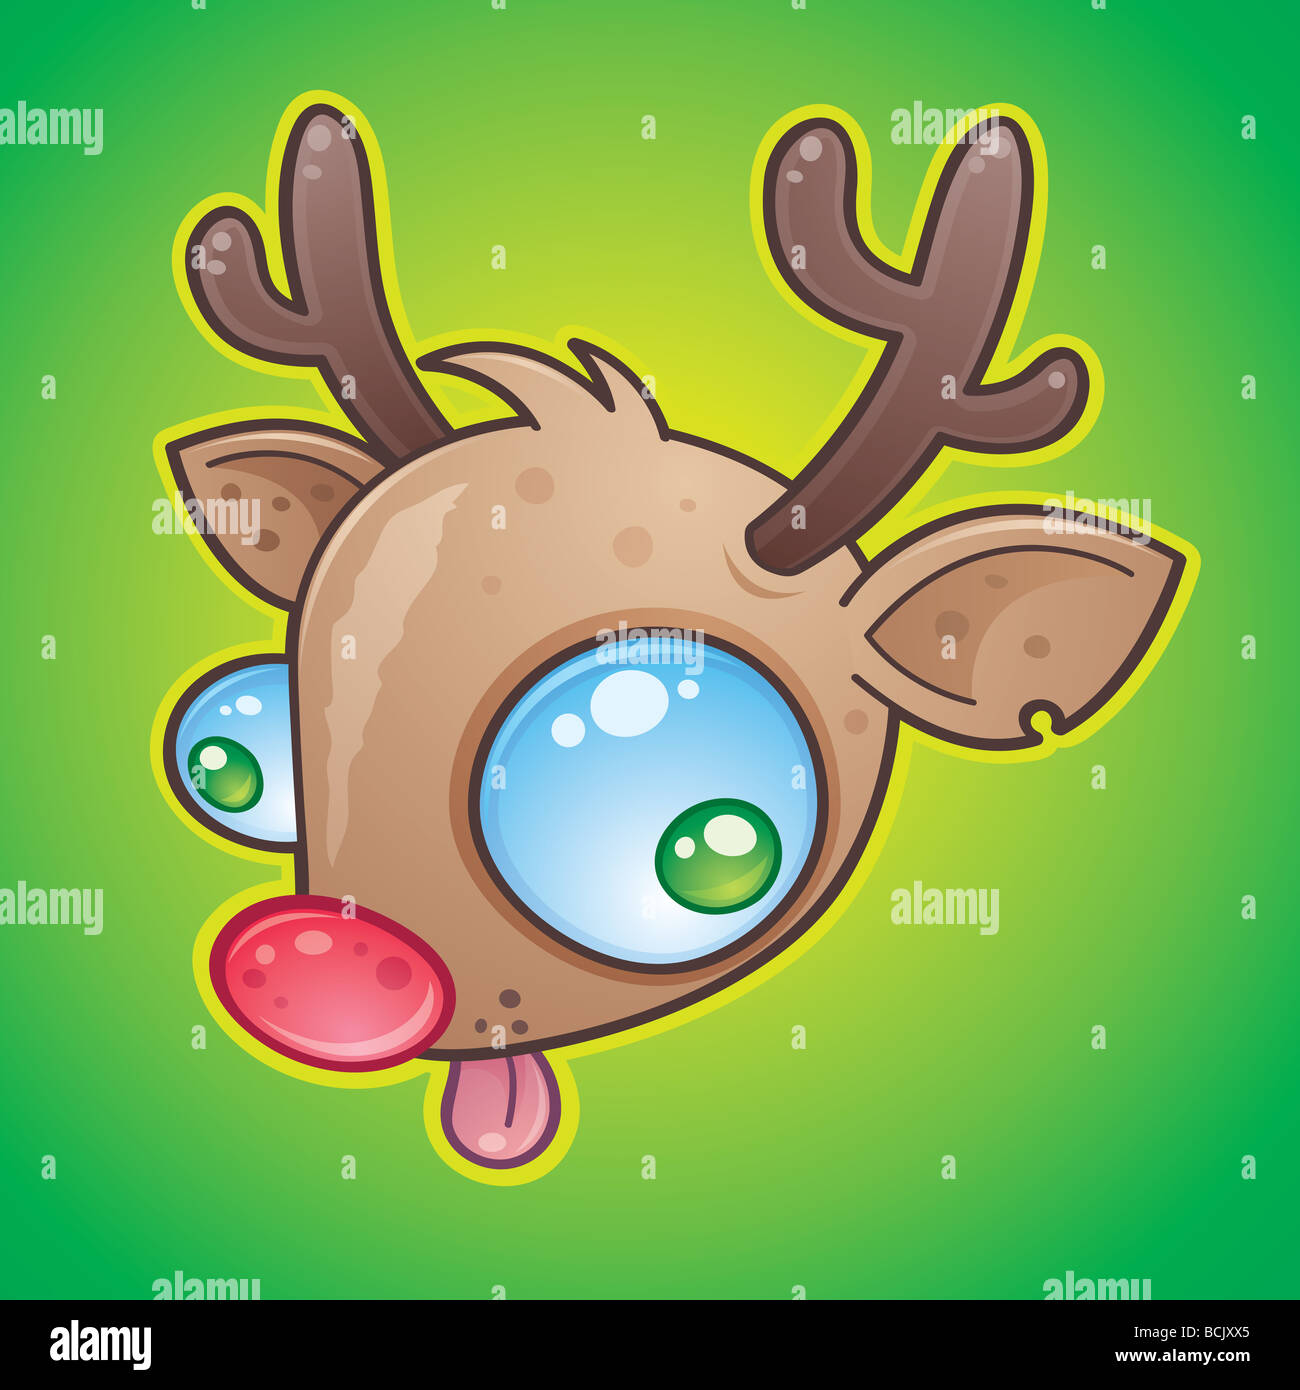 Verrückte Rudolph The Red Nosed Reindeer Gesicht mit weit aufgerissenen Augen seine Zunge. in einem humorvollen Cartoon-Stil gezeichnet. Stockfoto